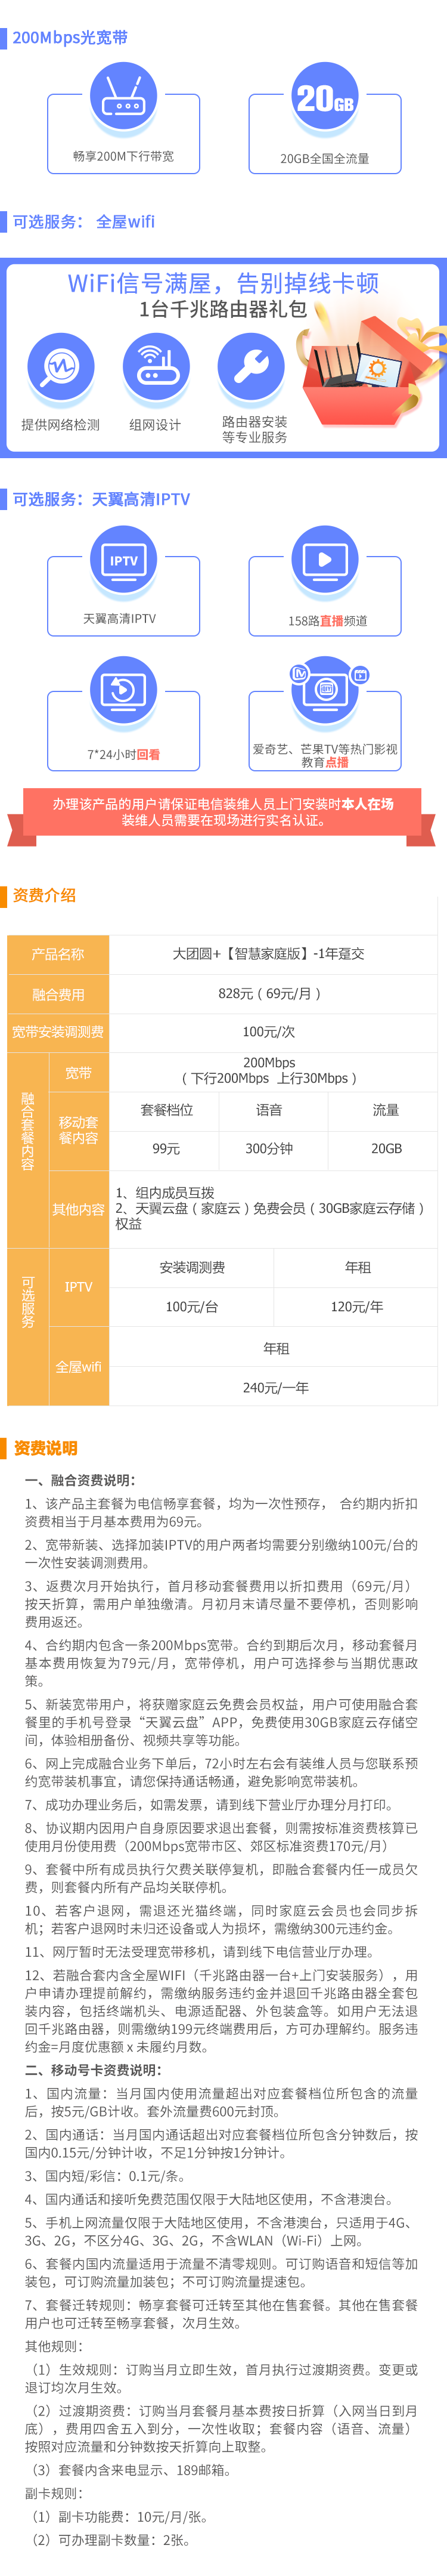 北京电信200M宽带+20GB全国流量828元/年